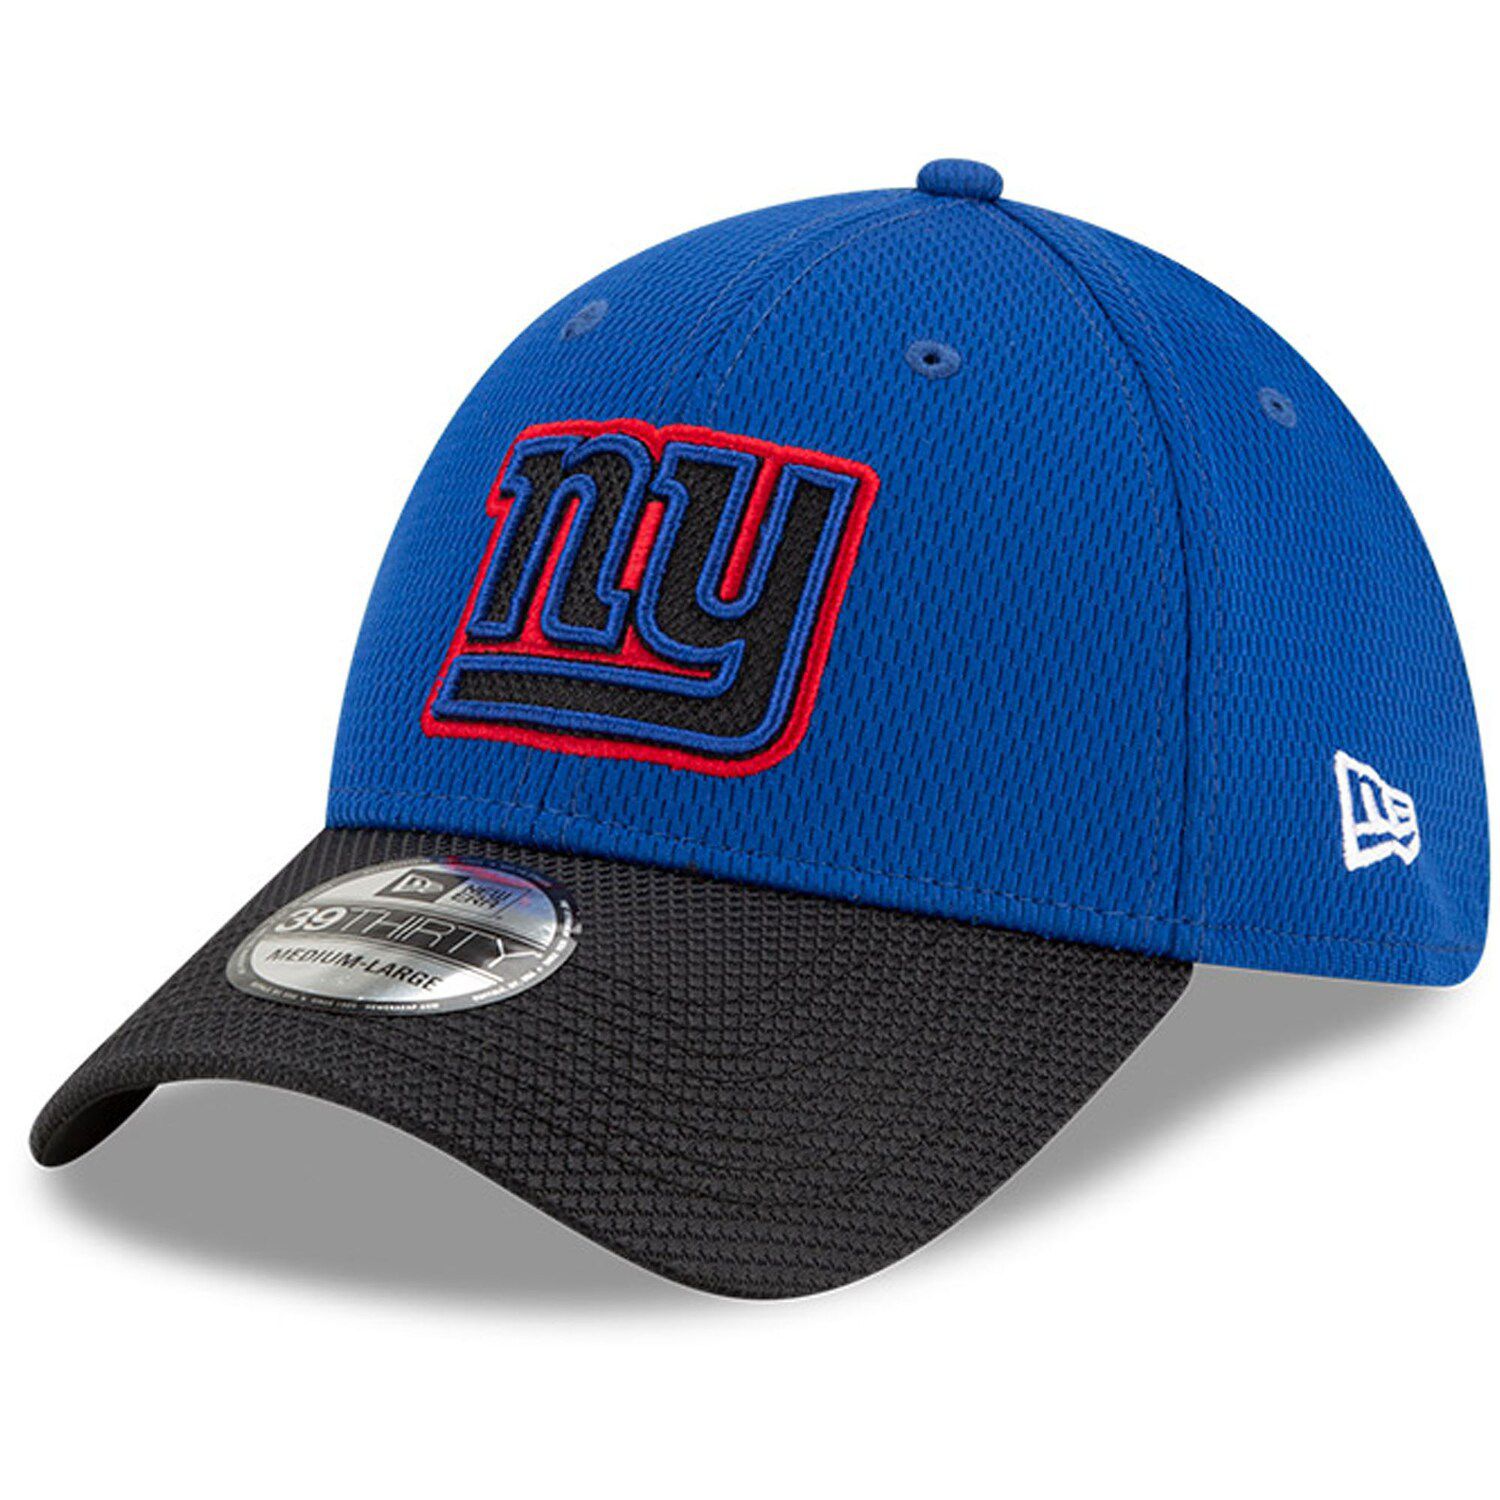 New York Giants sideline headwear